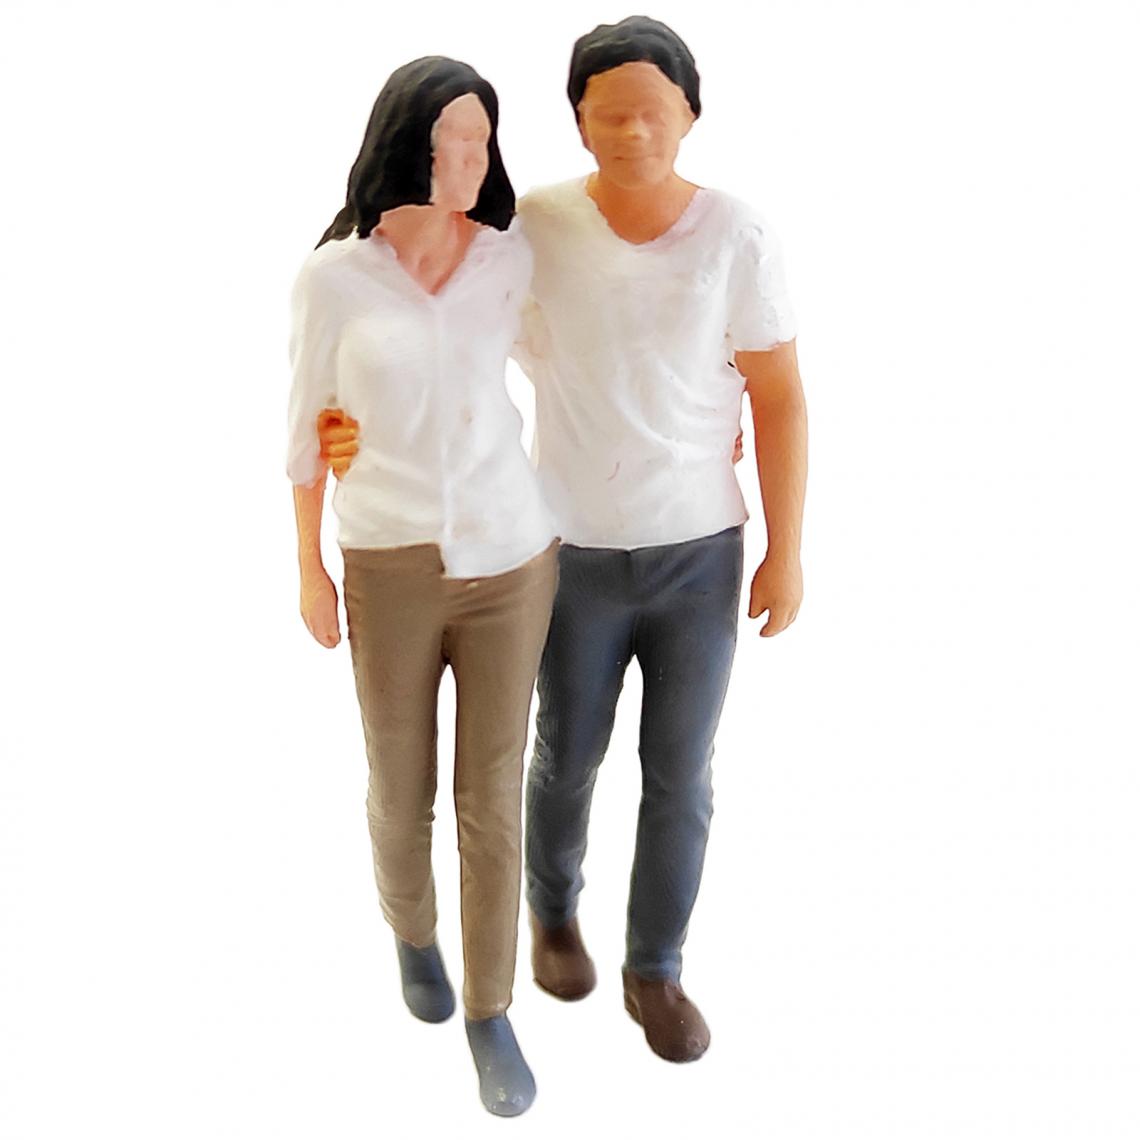 marque generique - 1:64 échelle Peinte à La Main Modèle Miniature Couple Figurines Park Diorama Jaune - Voitures